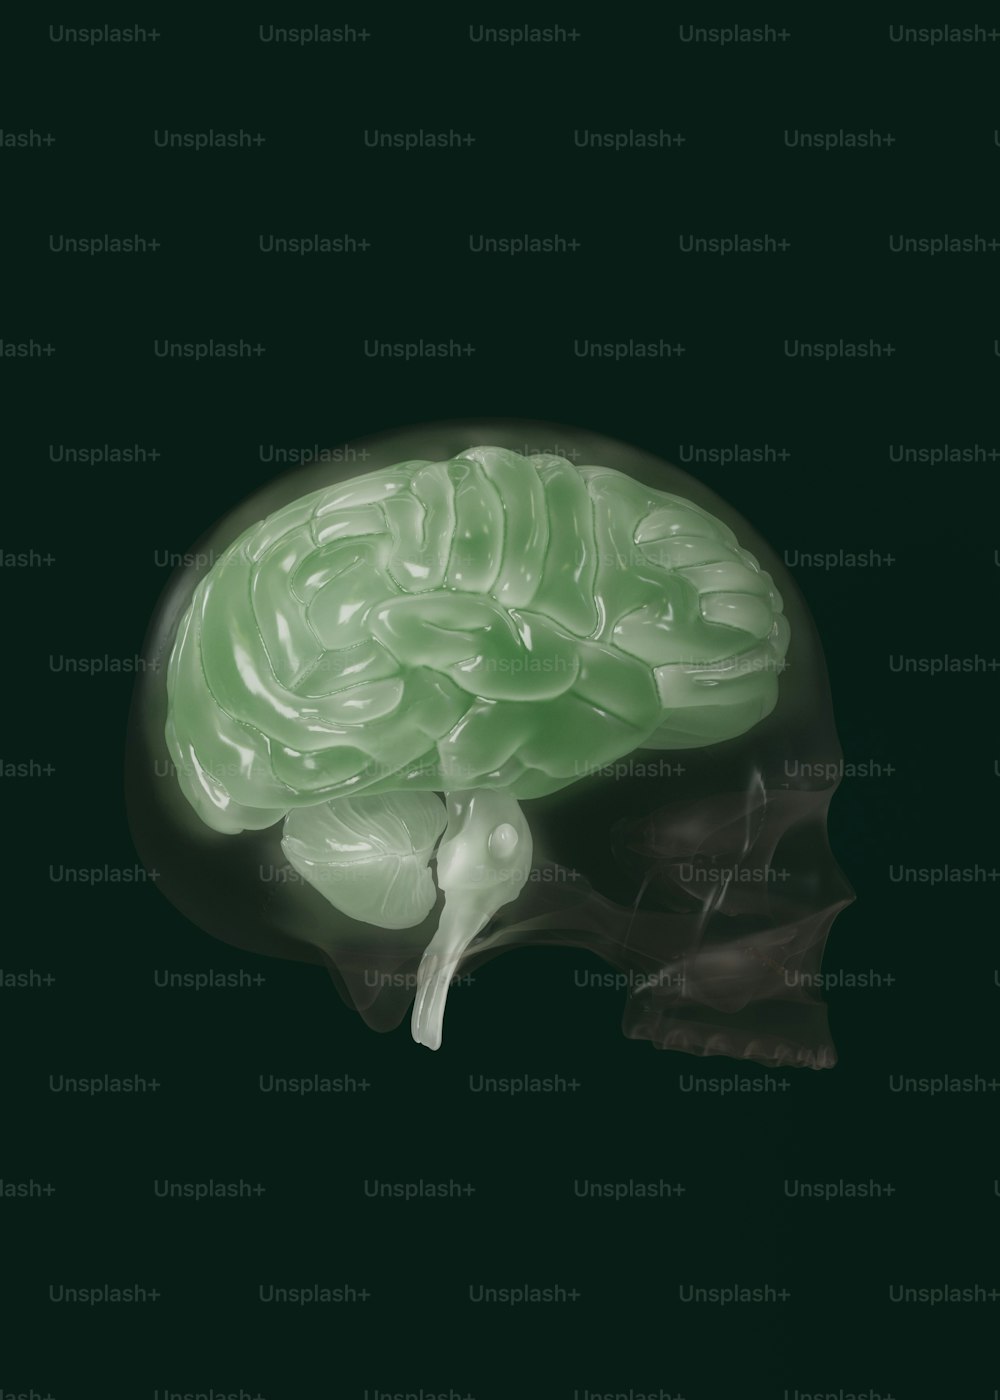 Ein Bild eines menschlichen Gehirns im Dunkeln